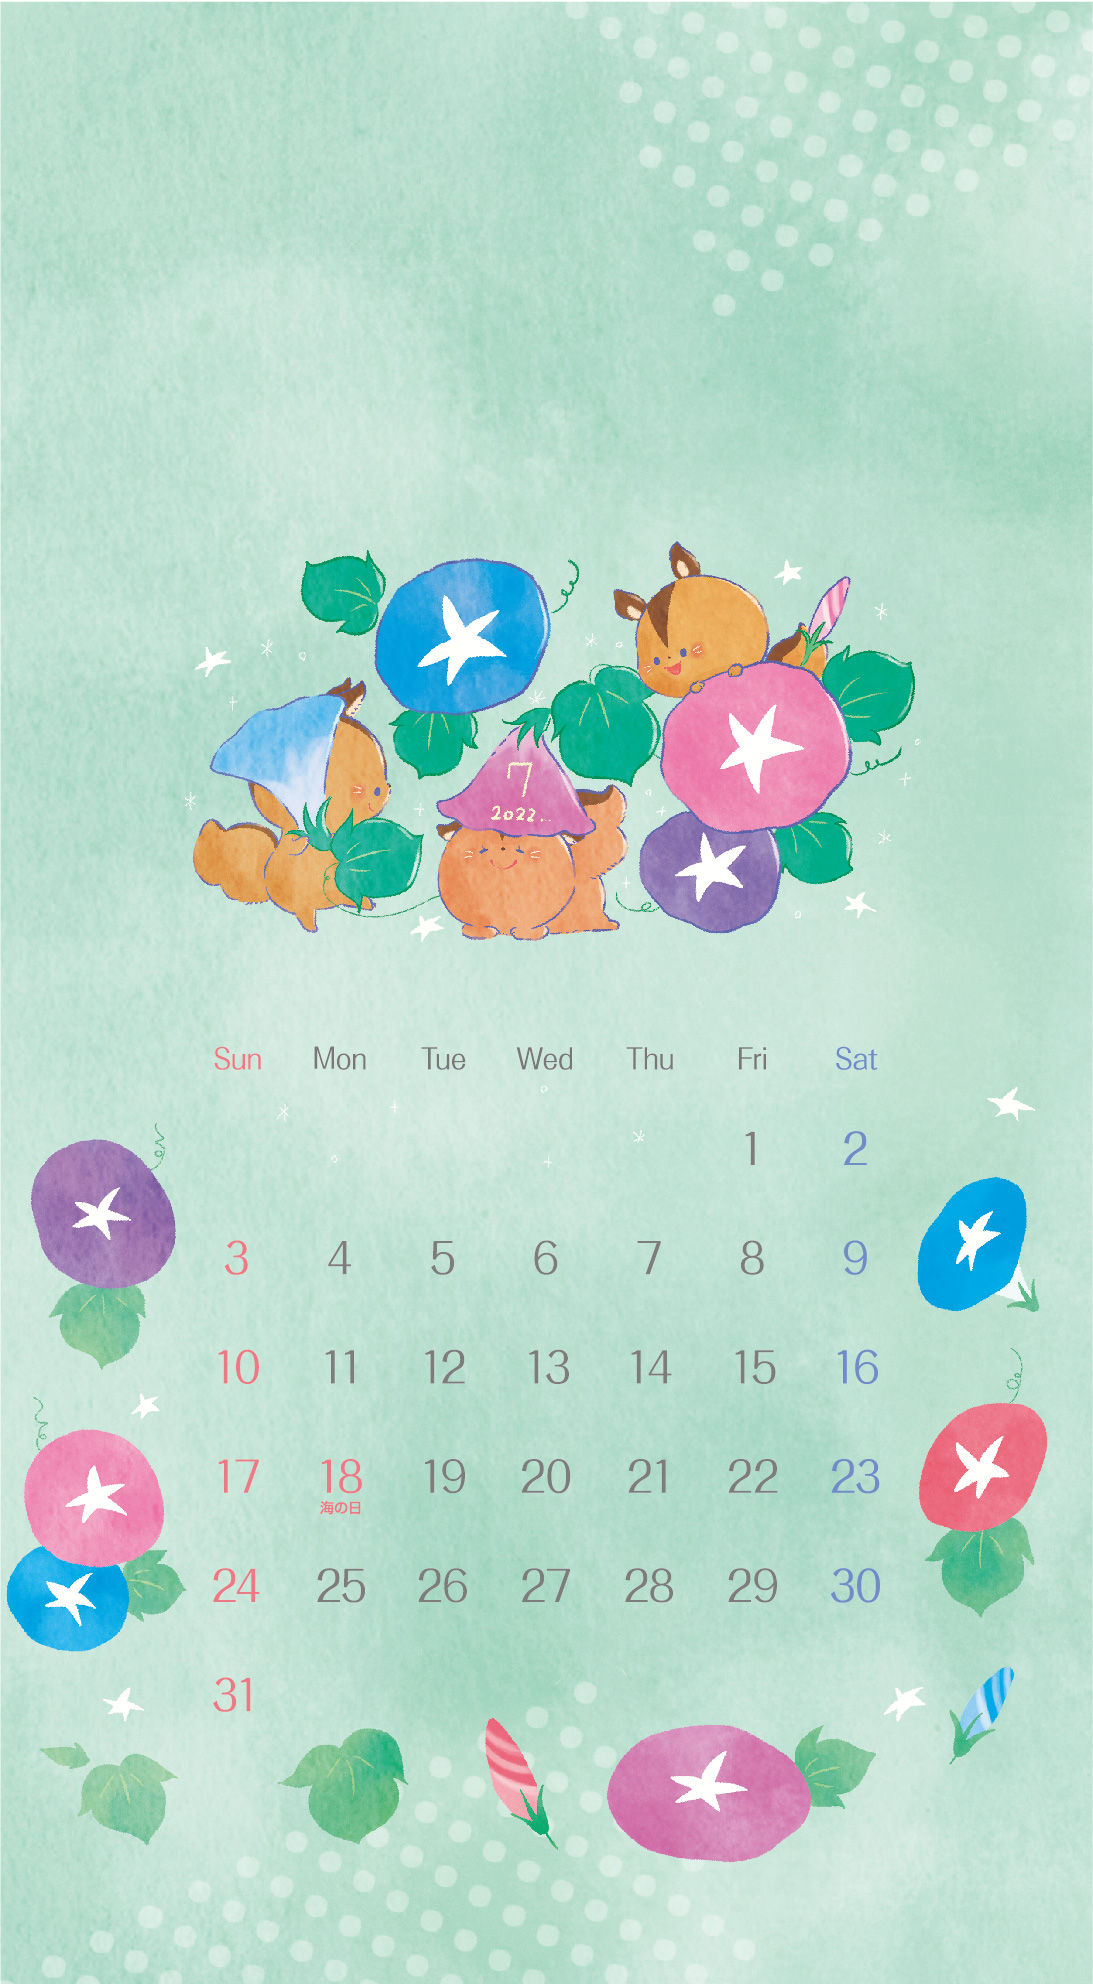 ７月のカレンダー スマートフォン用かわいいカレンダー壁紙 保育のお役立ち情報 月刊誌 ひかりのくに株式会社 こどもたちの未来のために